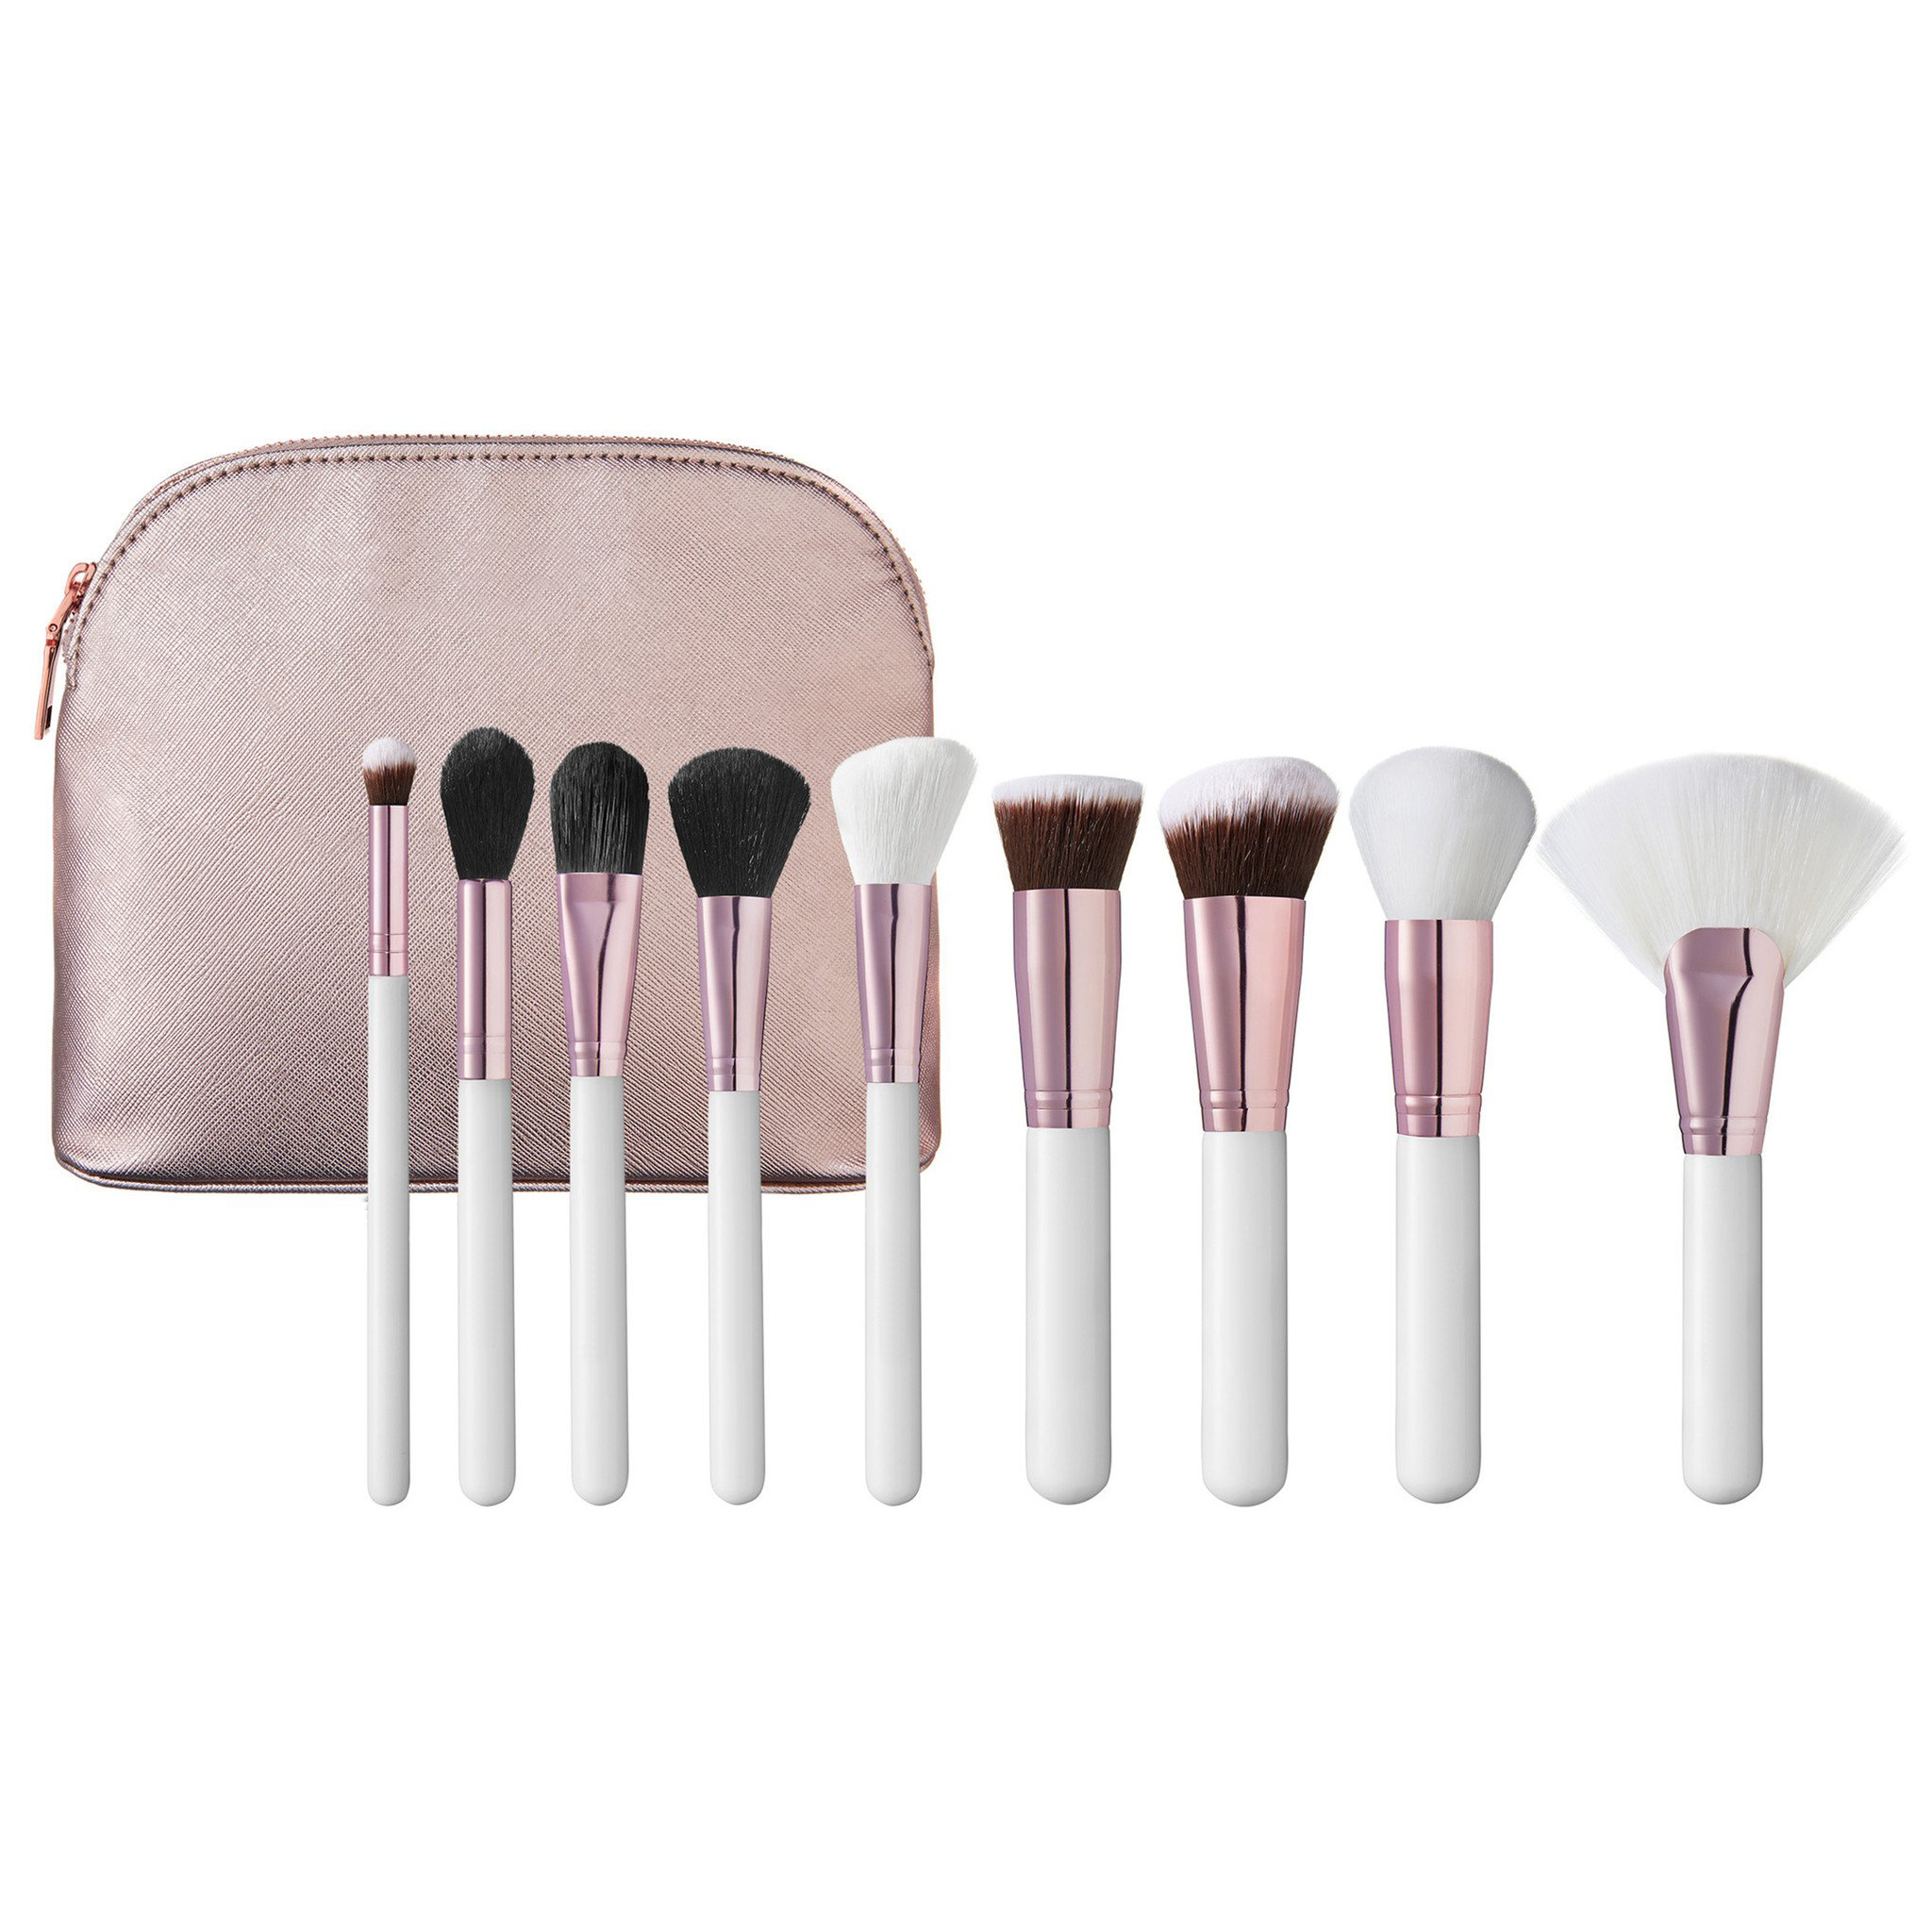 OEM 9pcs makeup brushes set